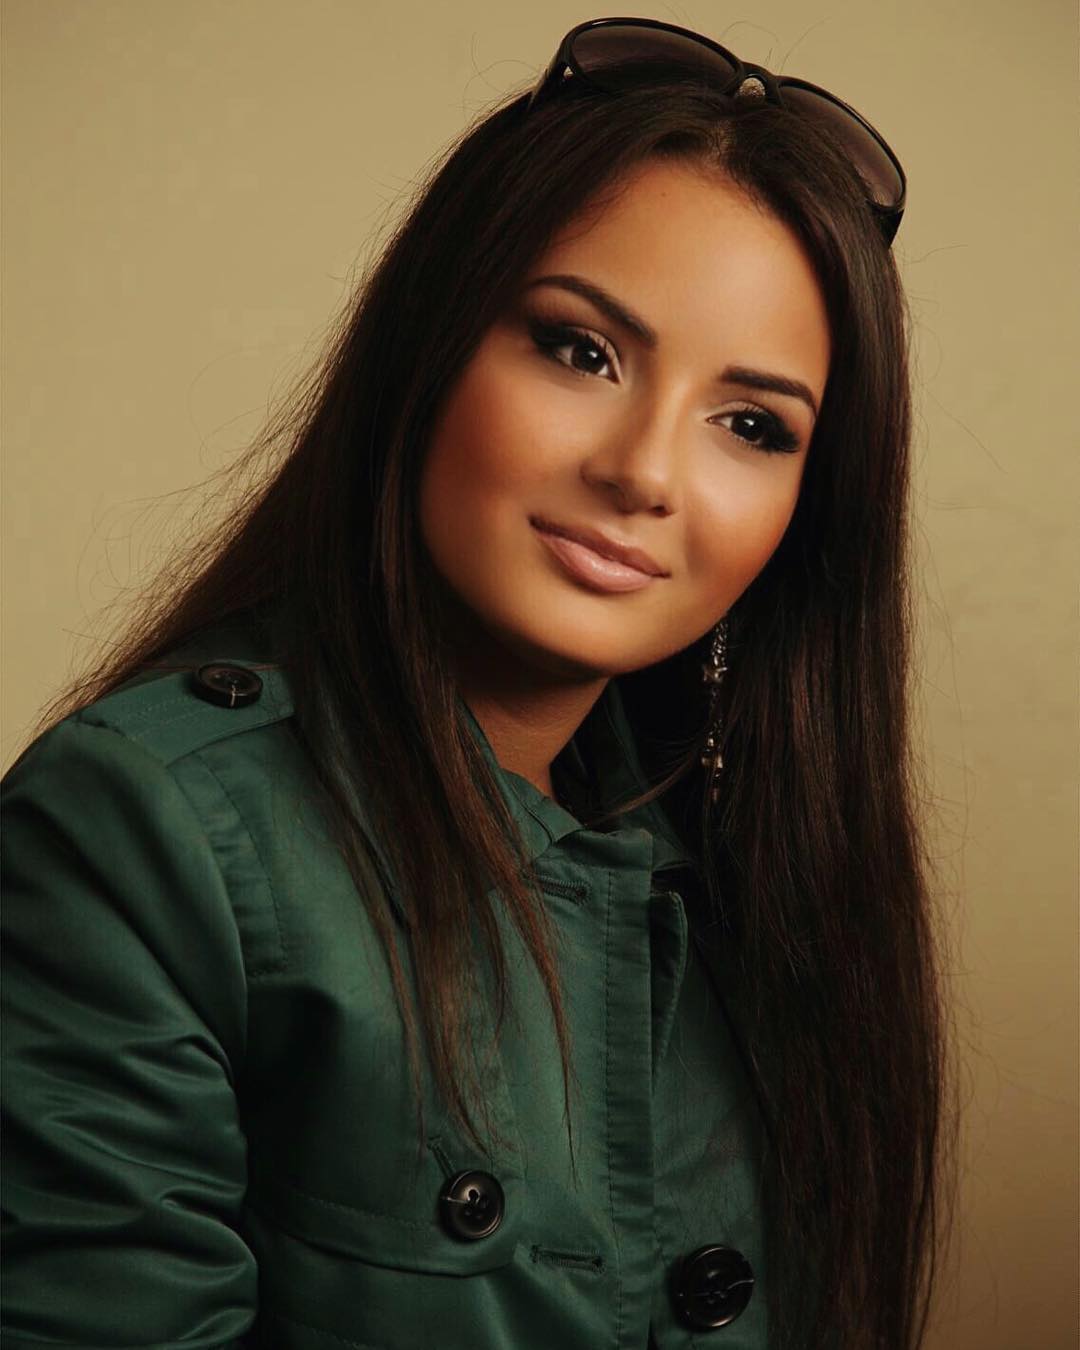 азербайджанка фото девушек красивых